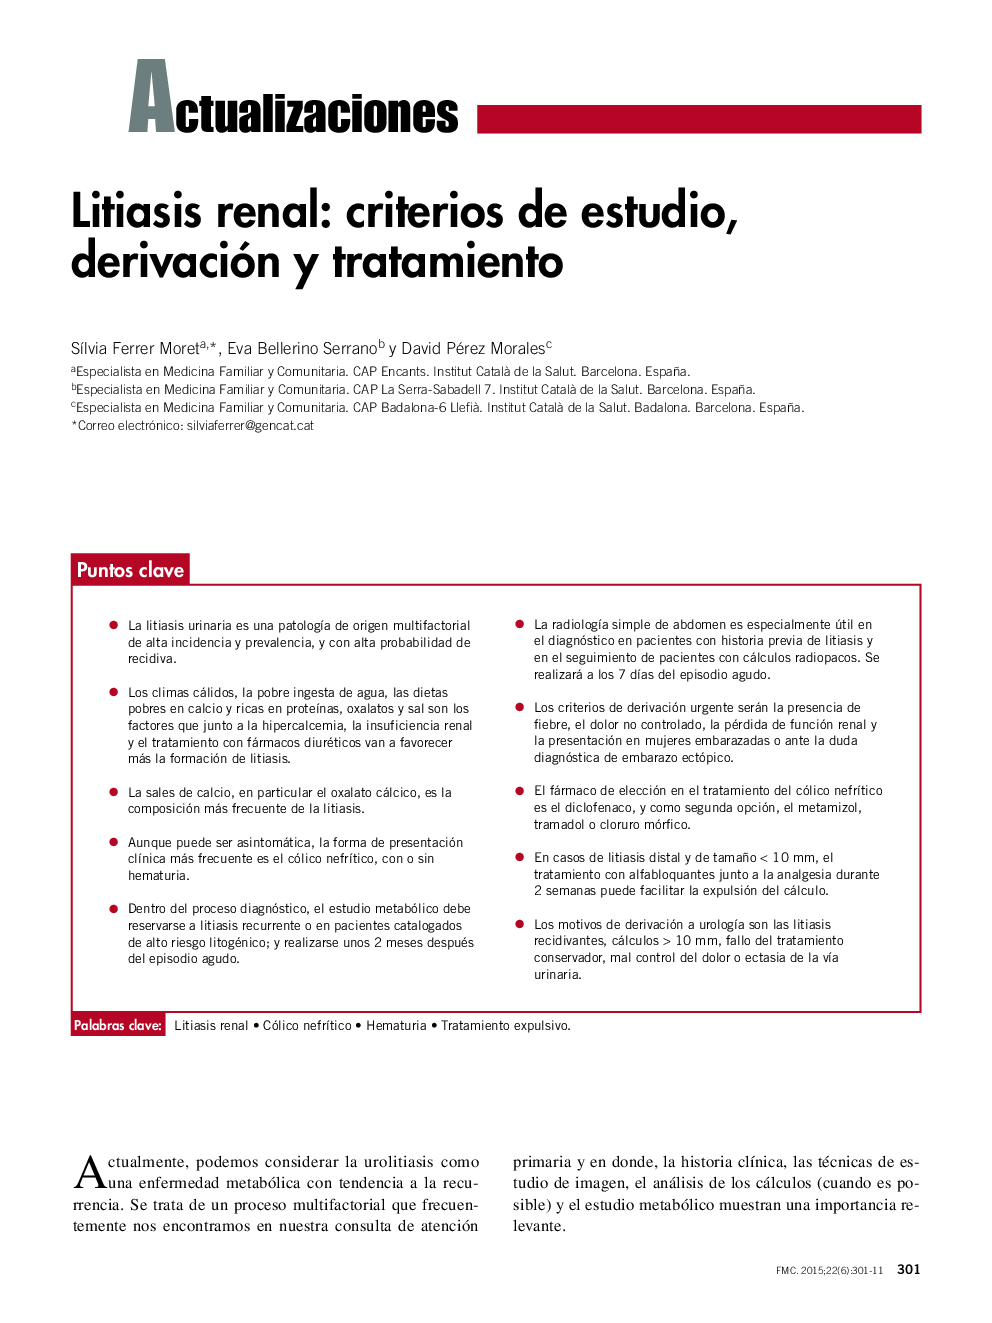 Litiasis renal: criterios de estudio, derivación y tratamiento